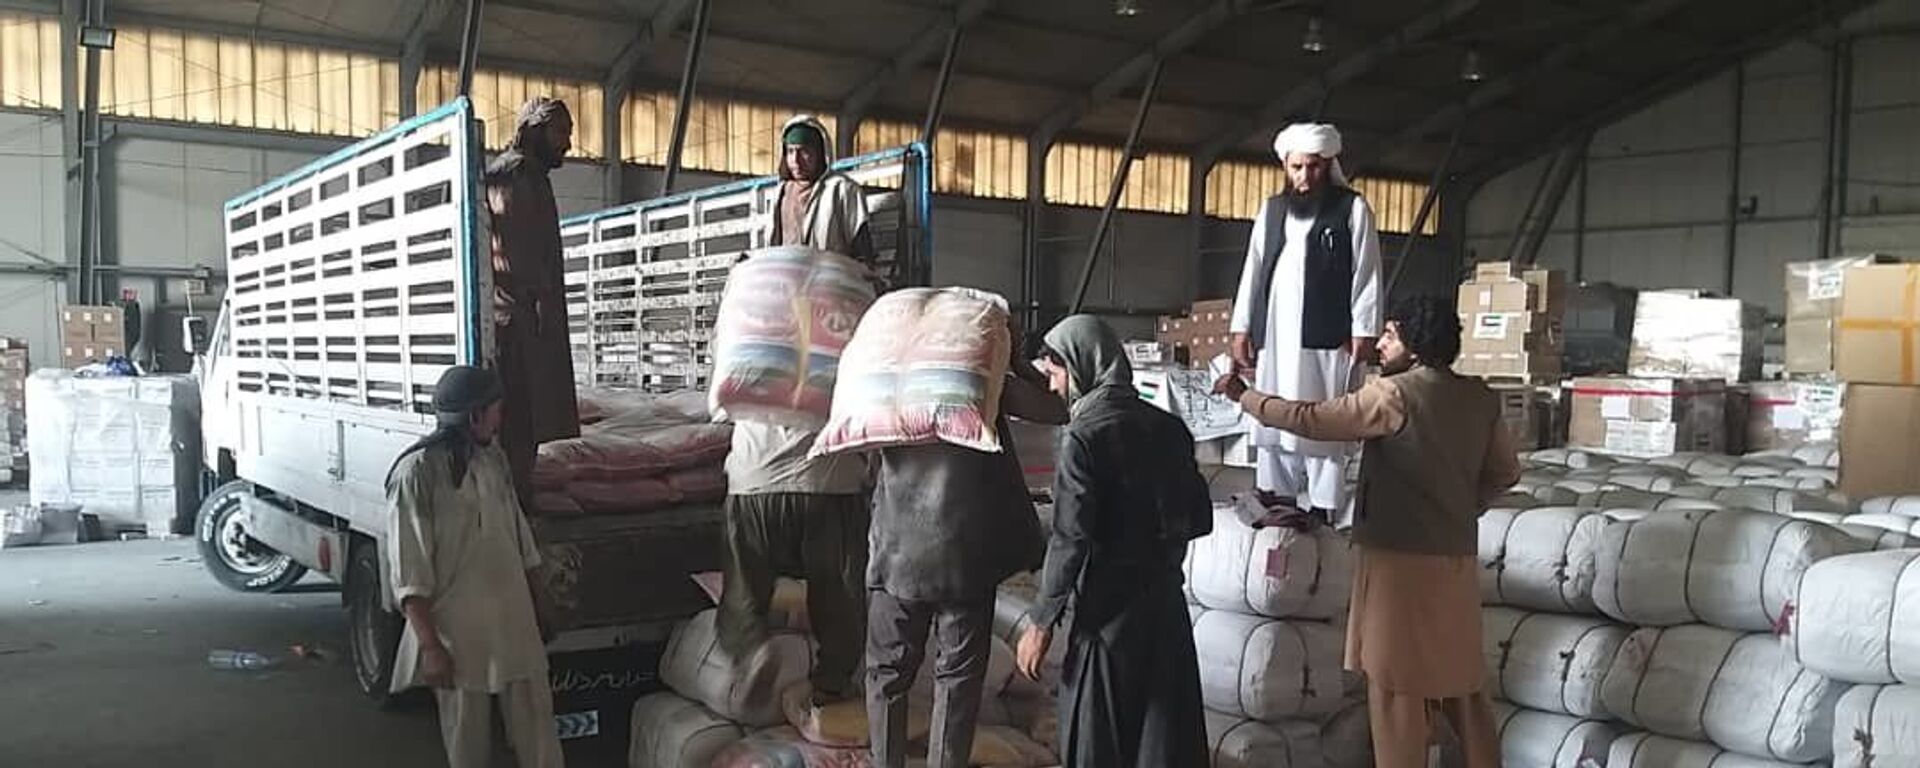 طالبان به بیجا شده گان پنجشیر مواد خوراکه فرستادند - اسپوتنیک افغانستان  , 1920, 03.10.2021